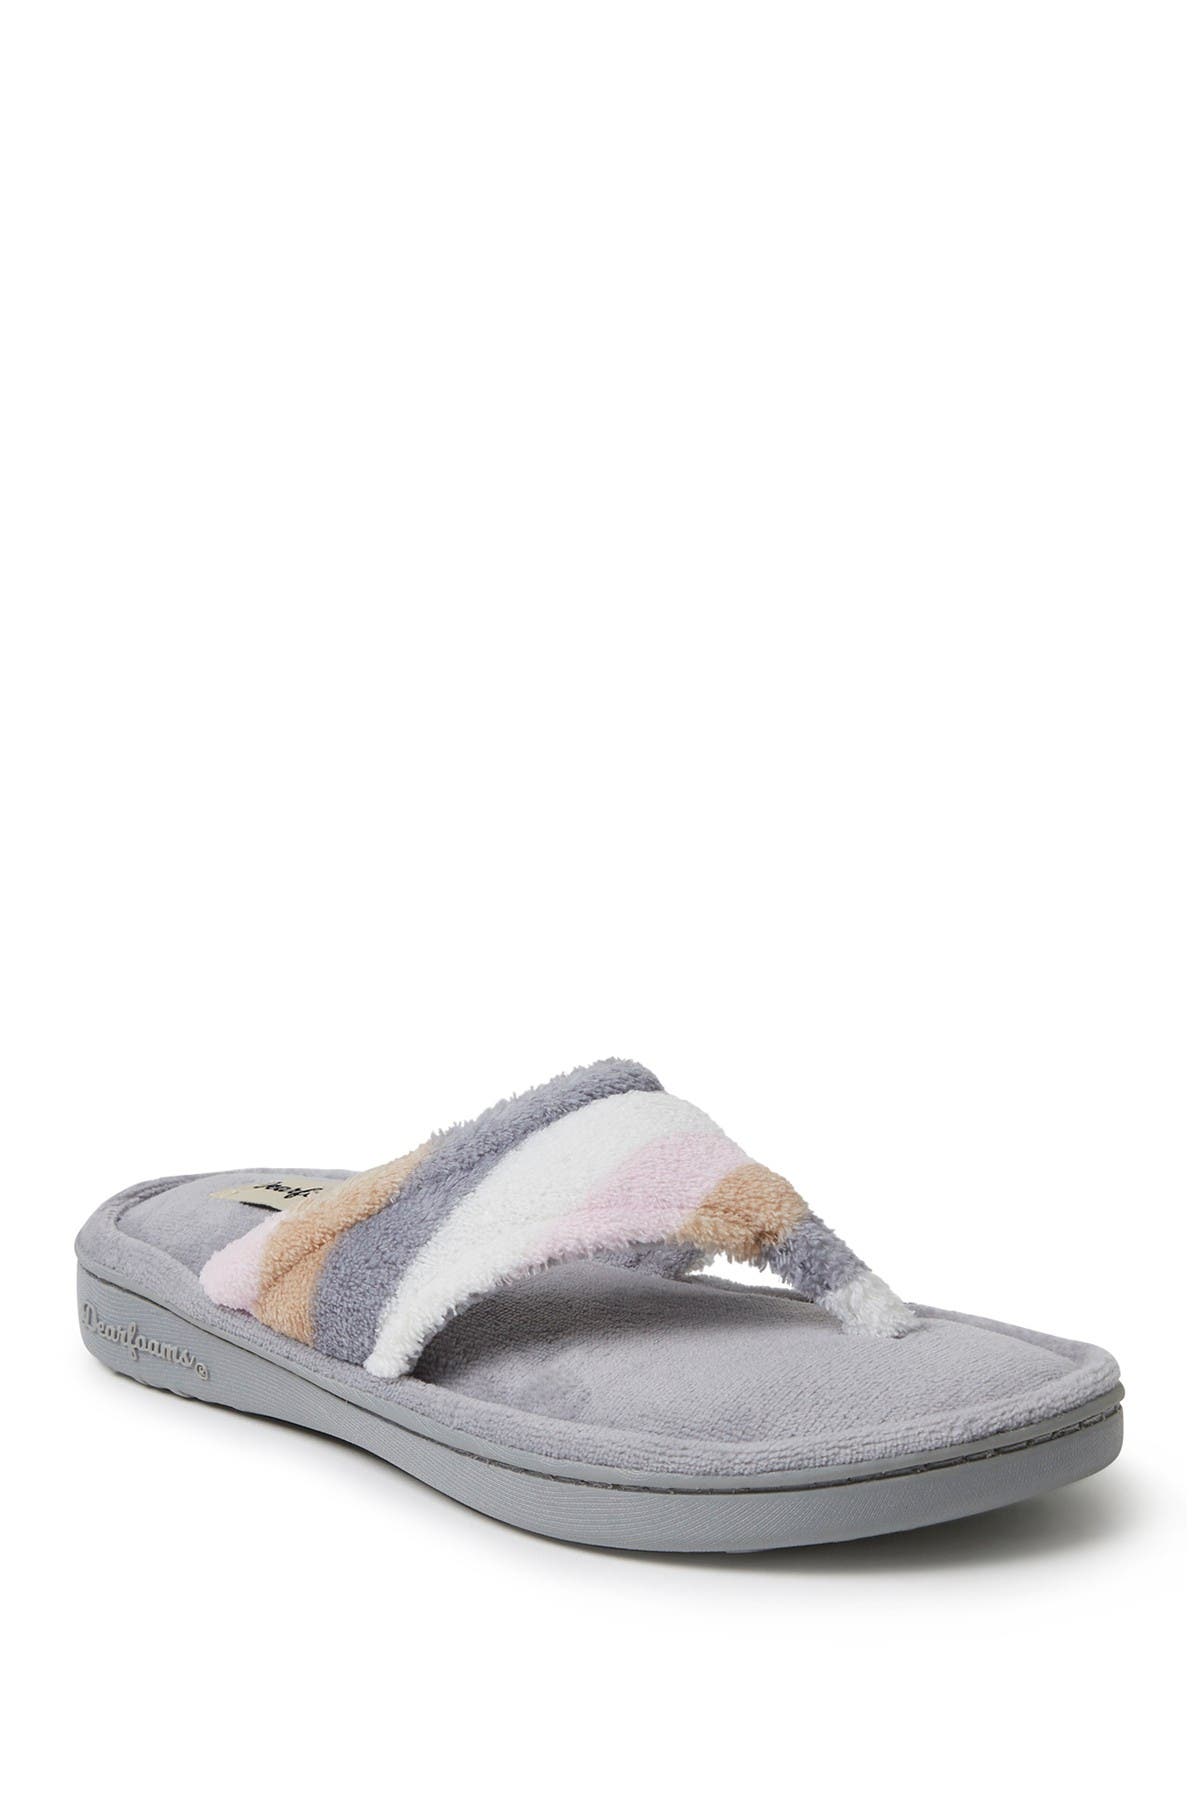 dearfoam sandal slippers